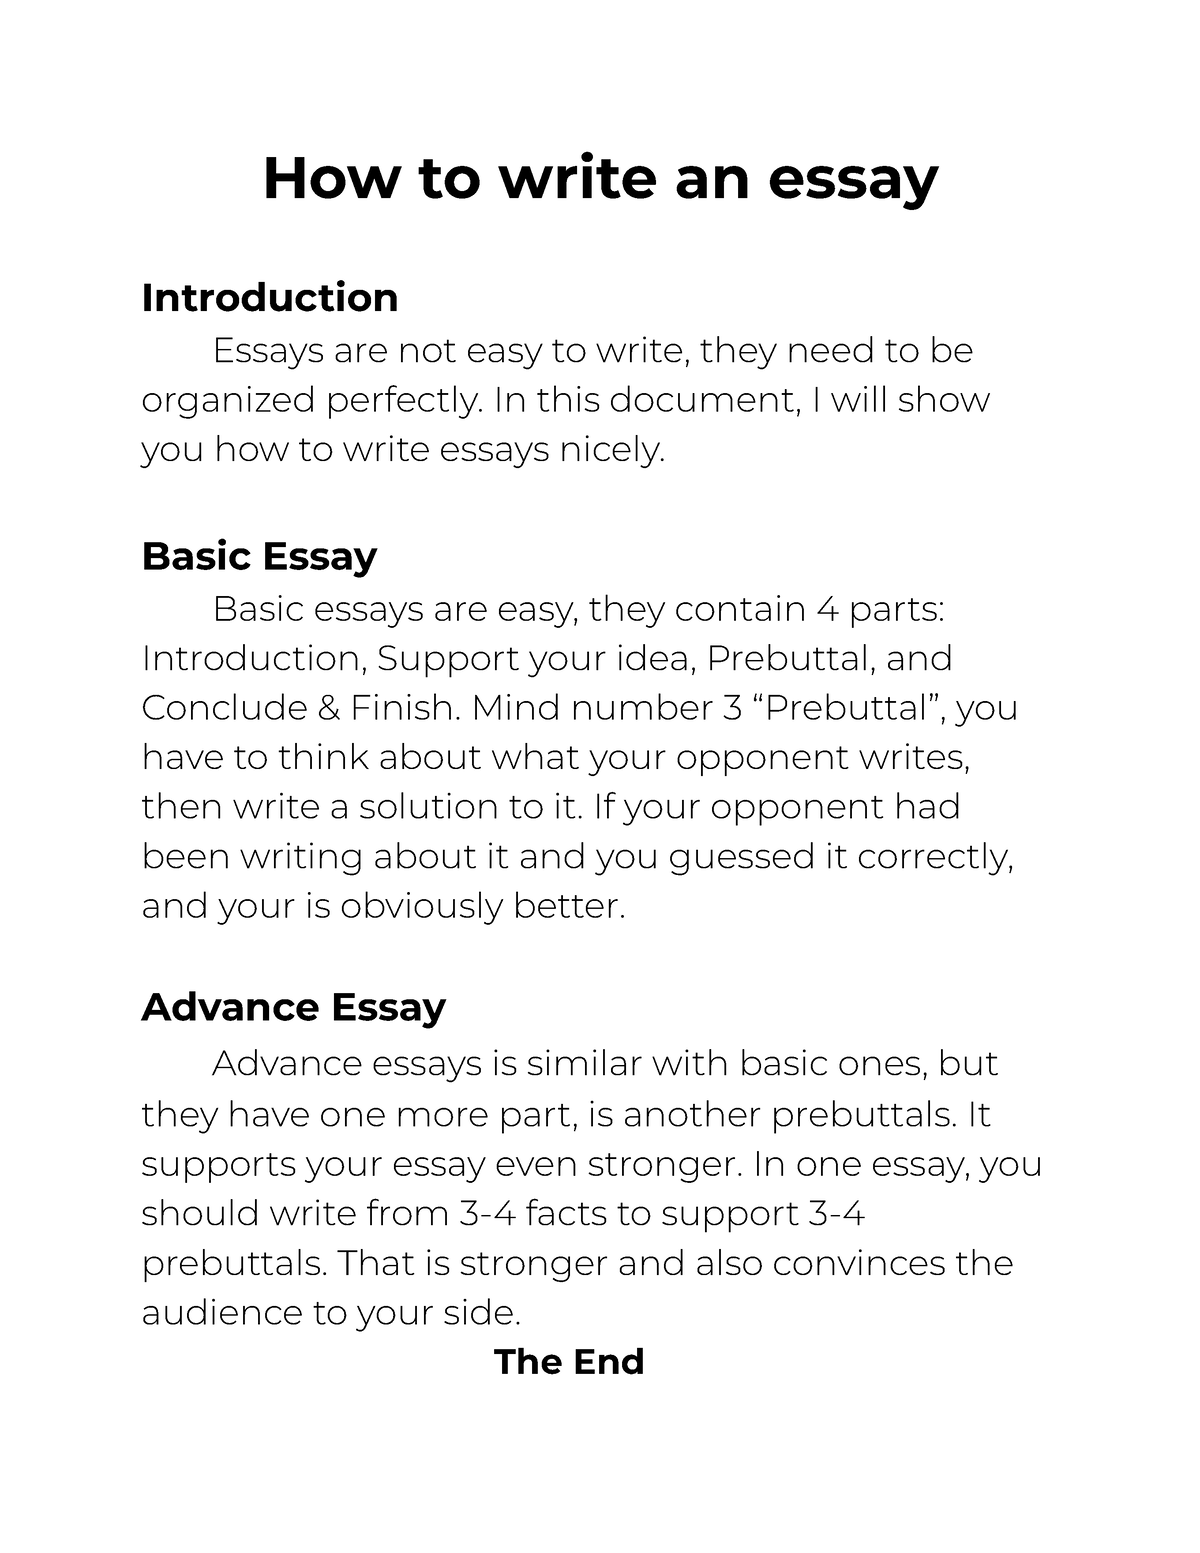 How to write an essay - How to write an essay Introduction Essays are ...